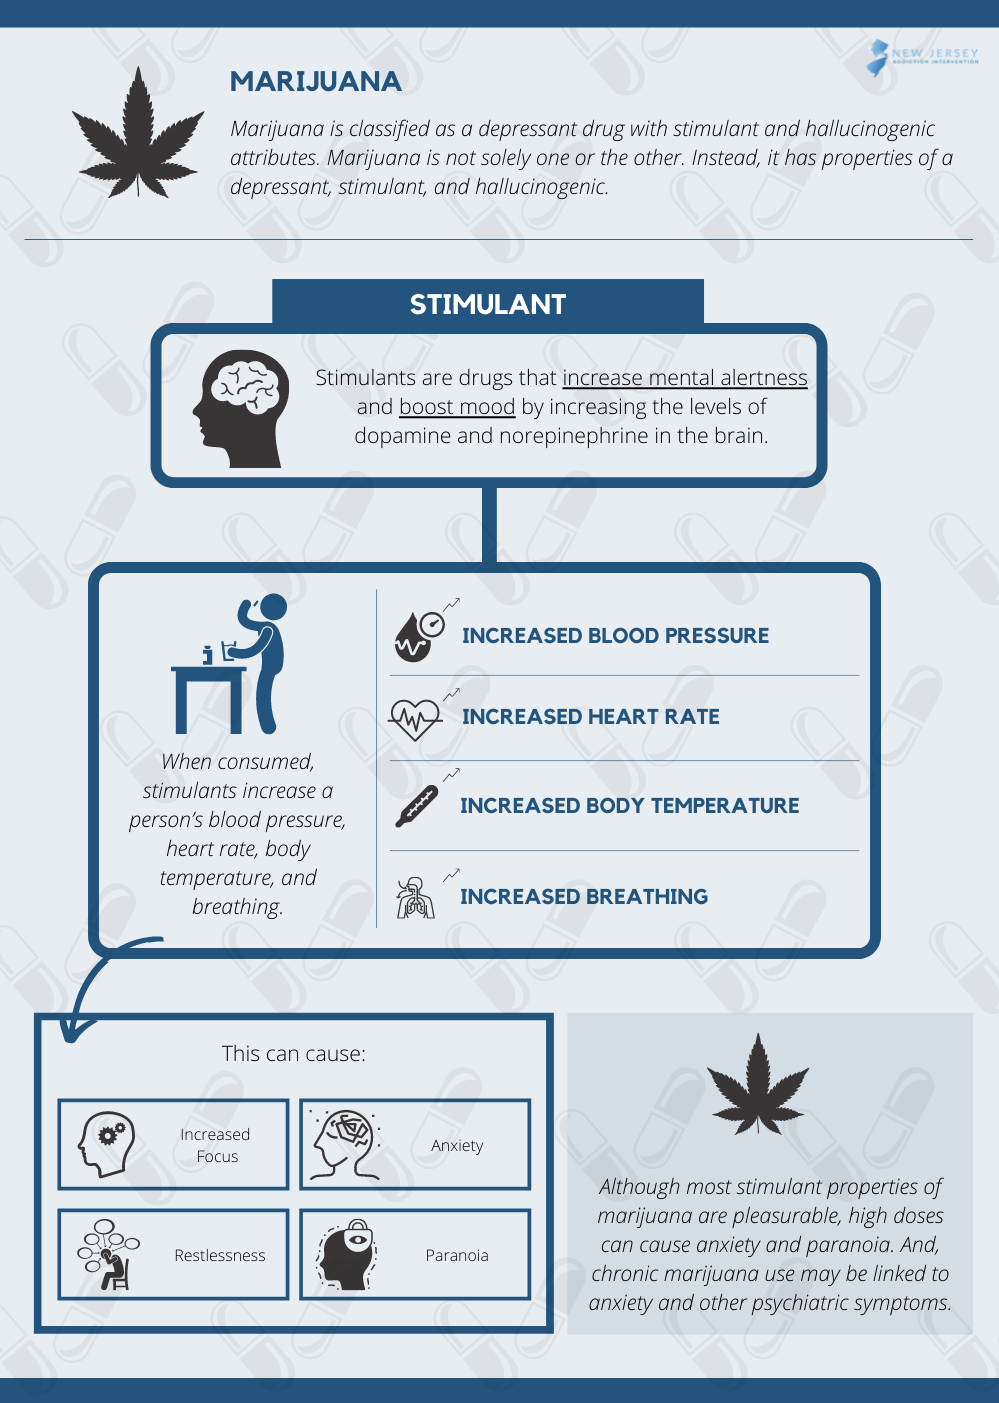 Stimulant Effects of Marijuana